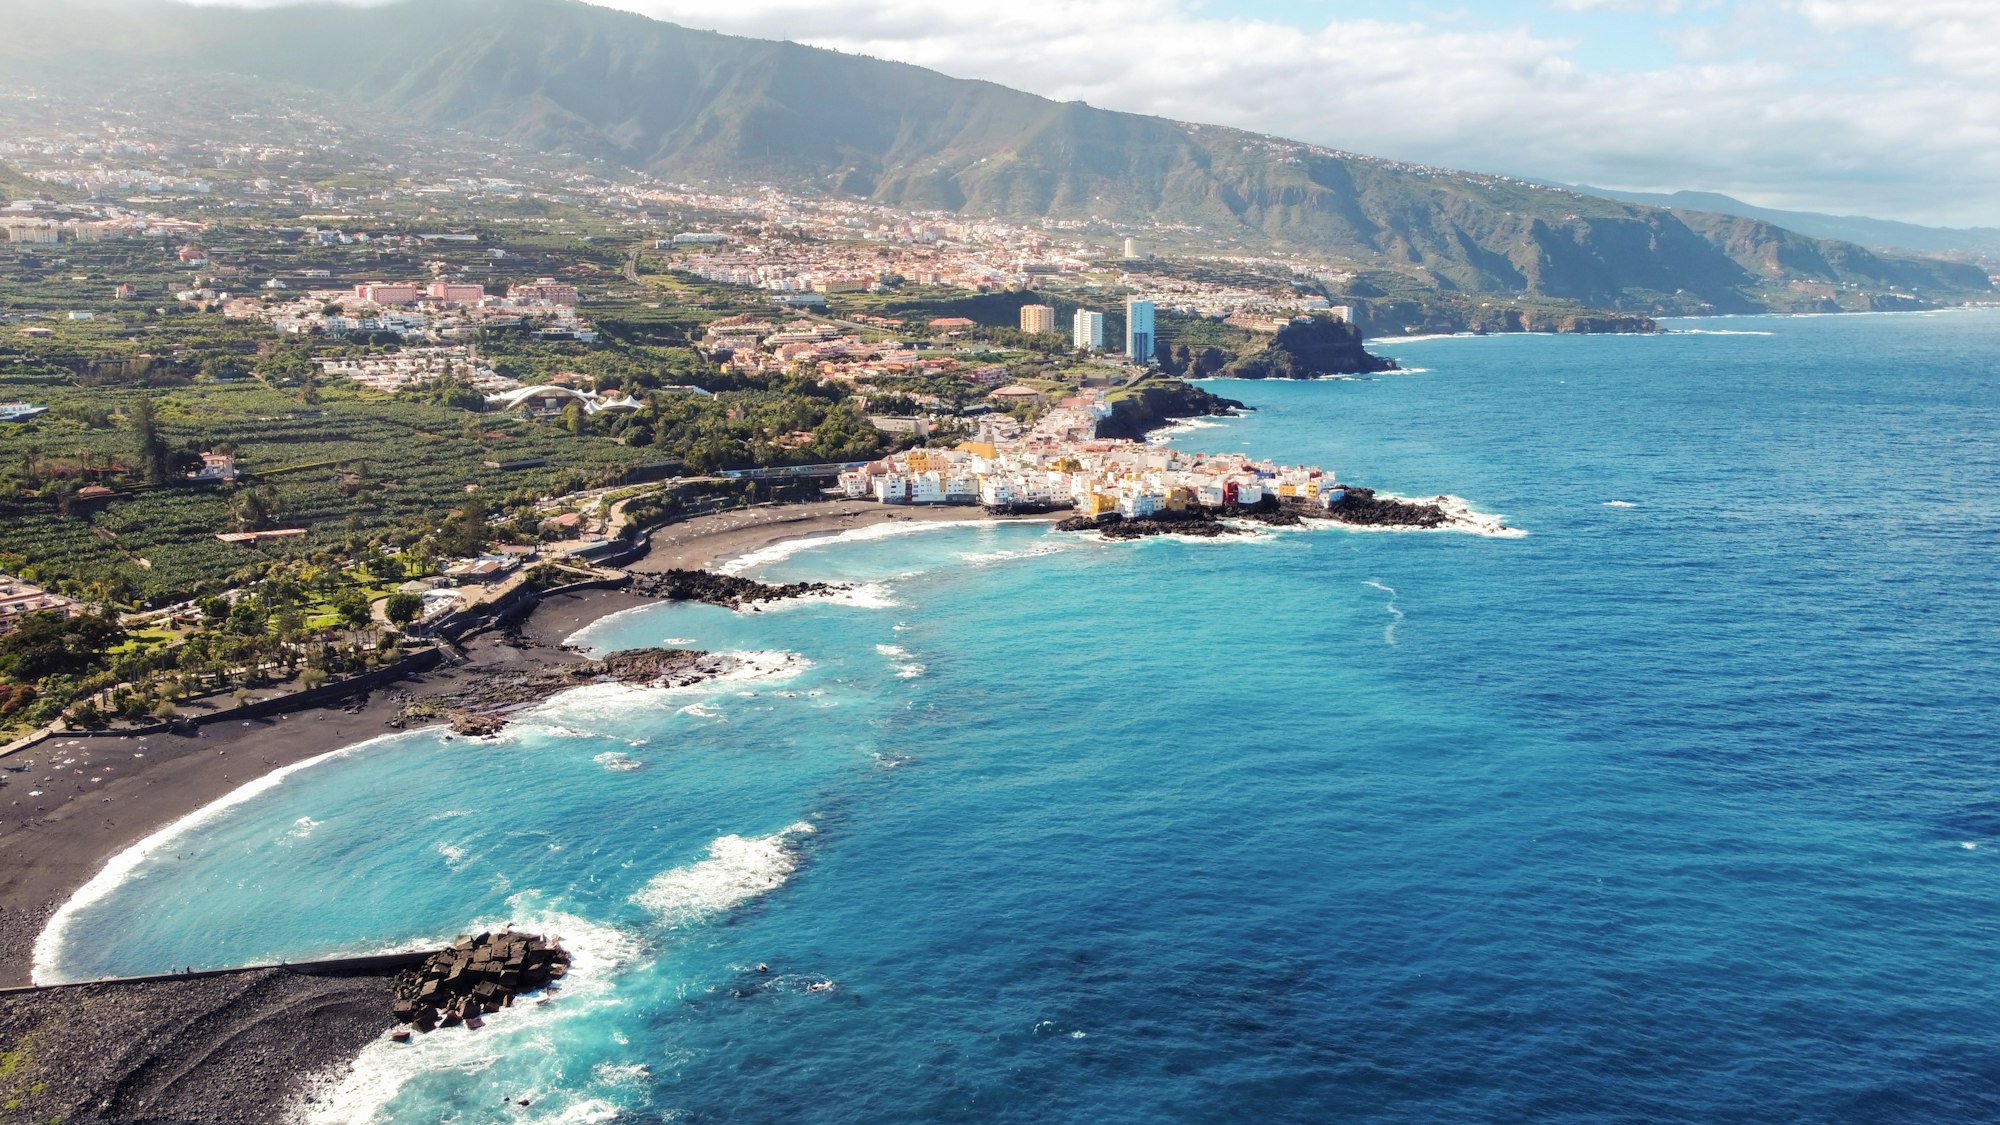 Aerial drone view of Puerto de la Cruz in Tenerife, Canary Islands